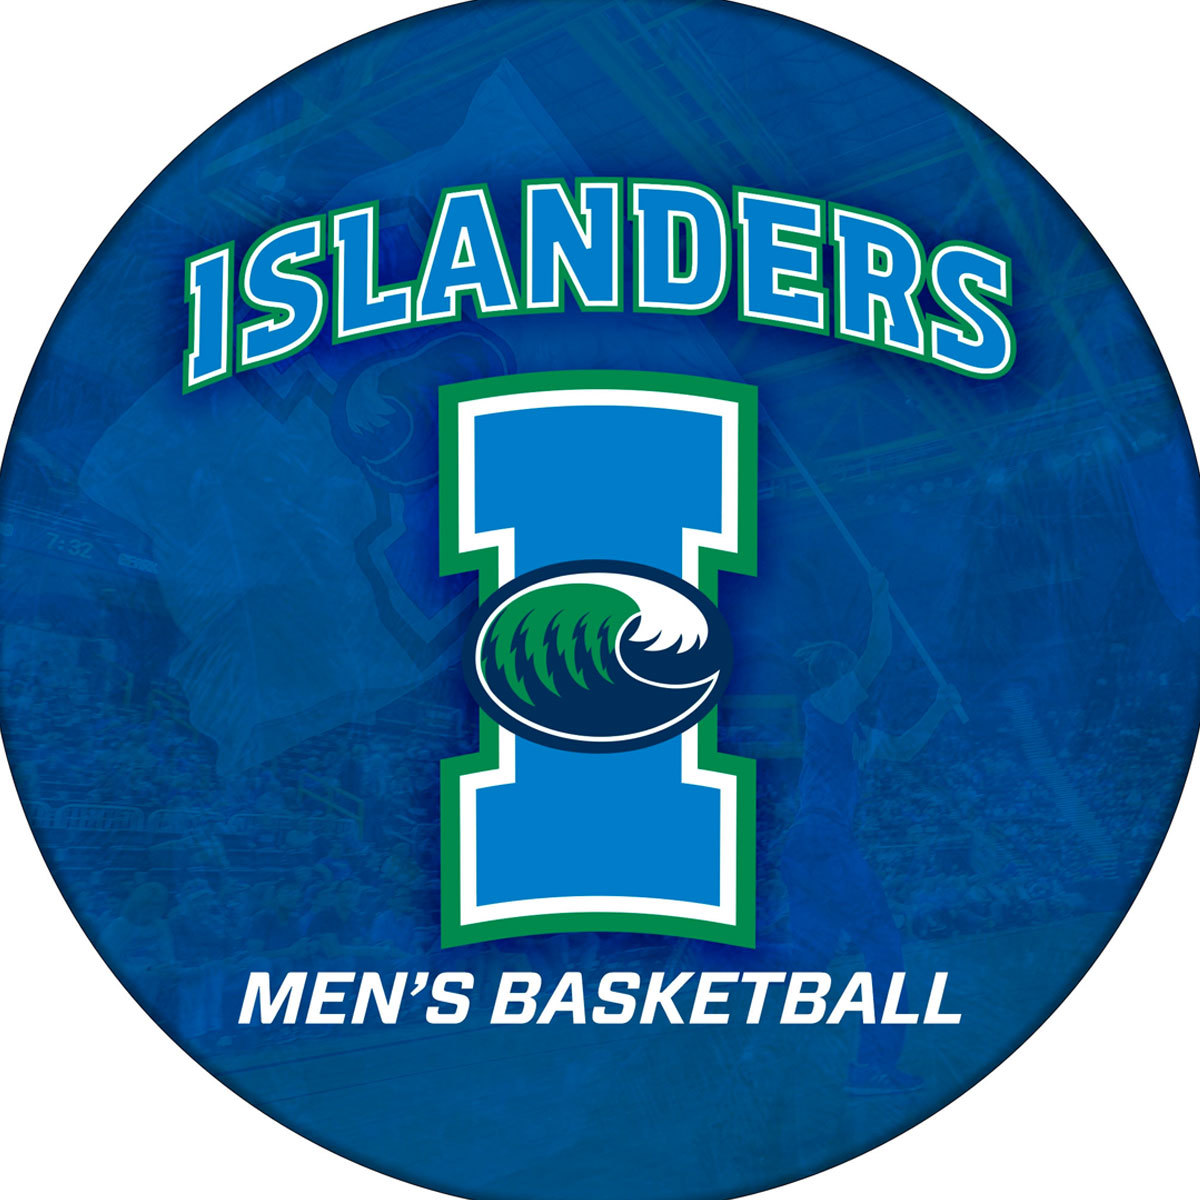 TAMUCC Islanders Men’s Basketball 